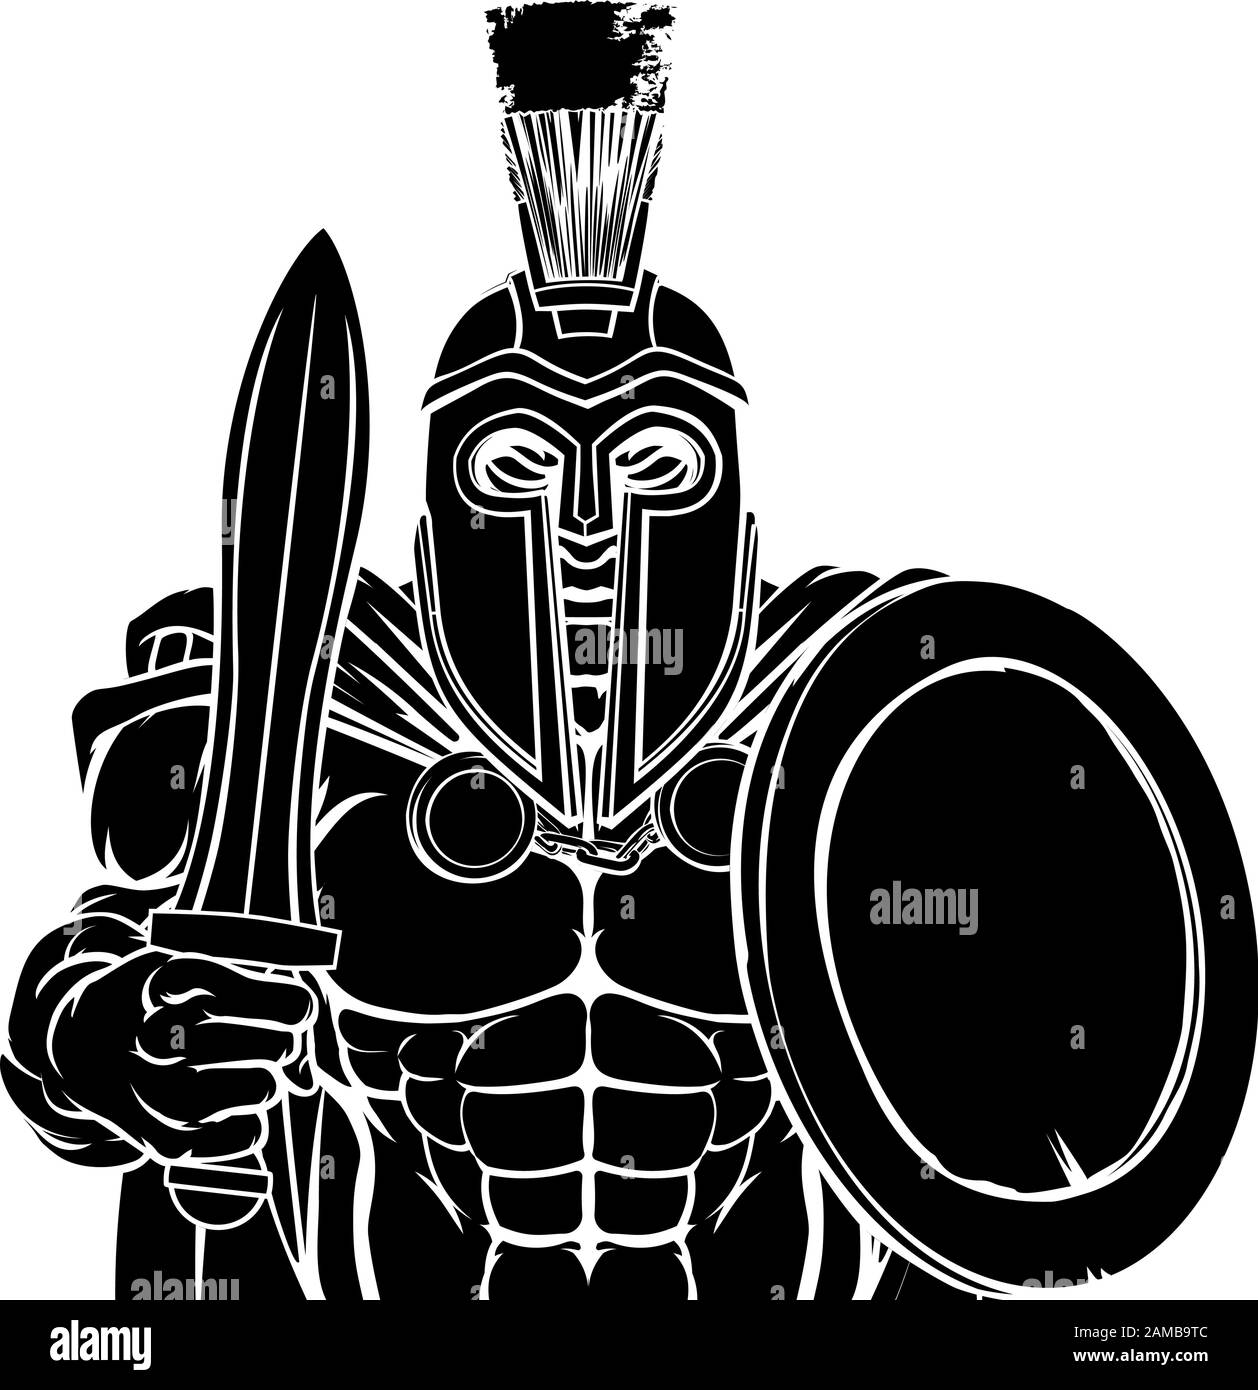 Trojan Spartan Sports Mascot Illustration de Vecteur